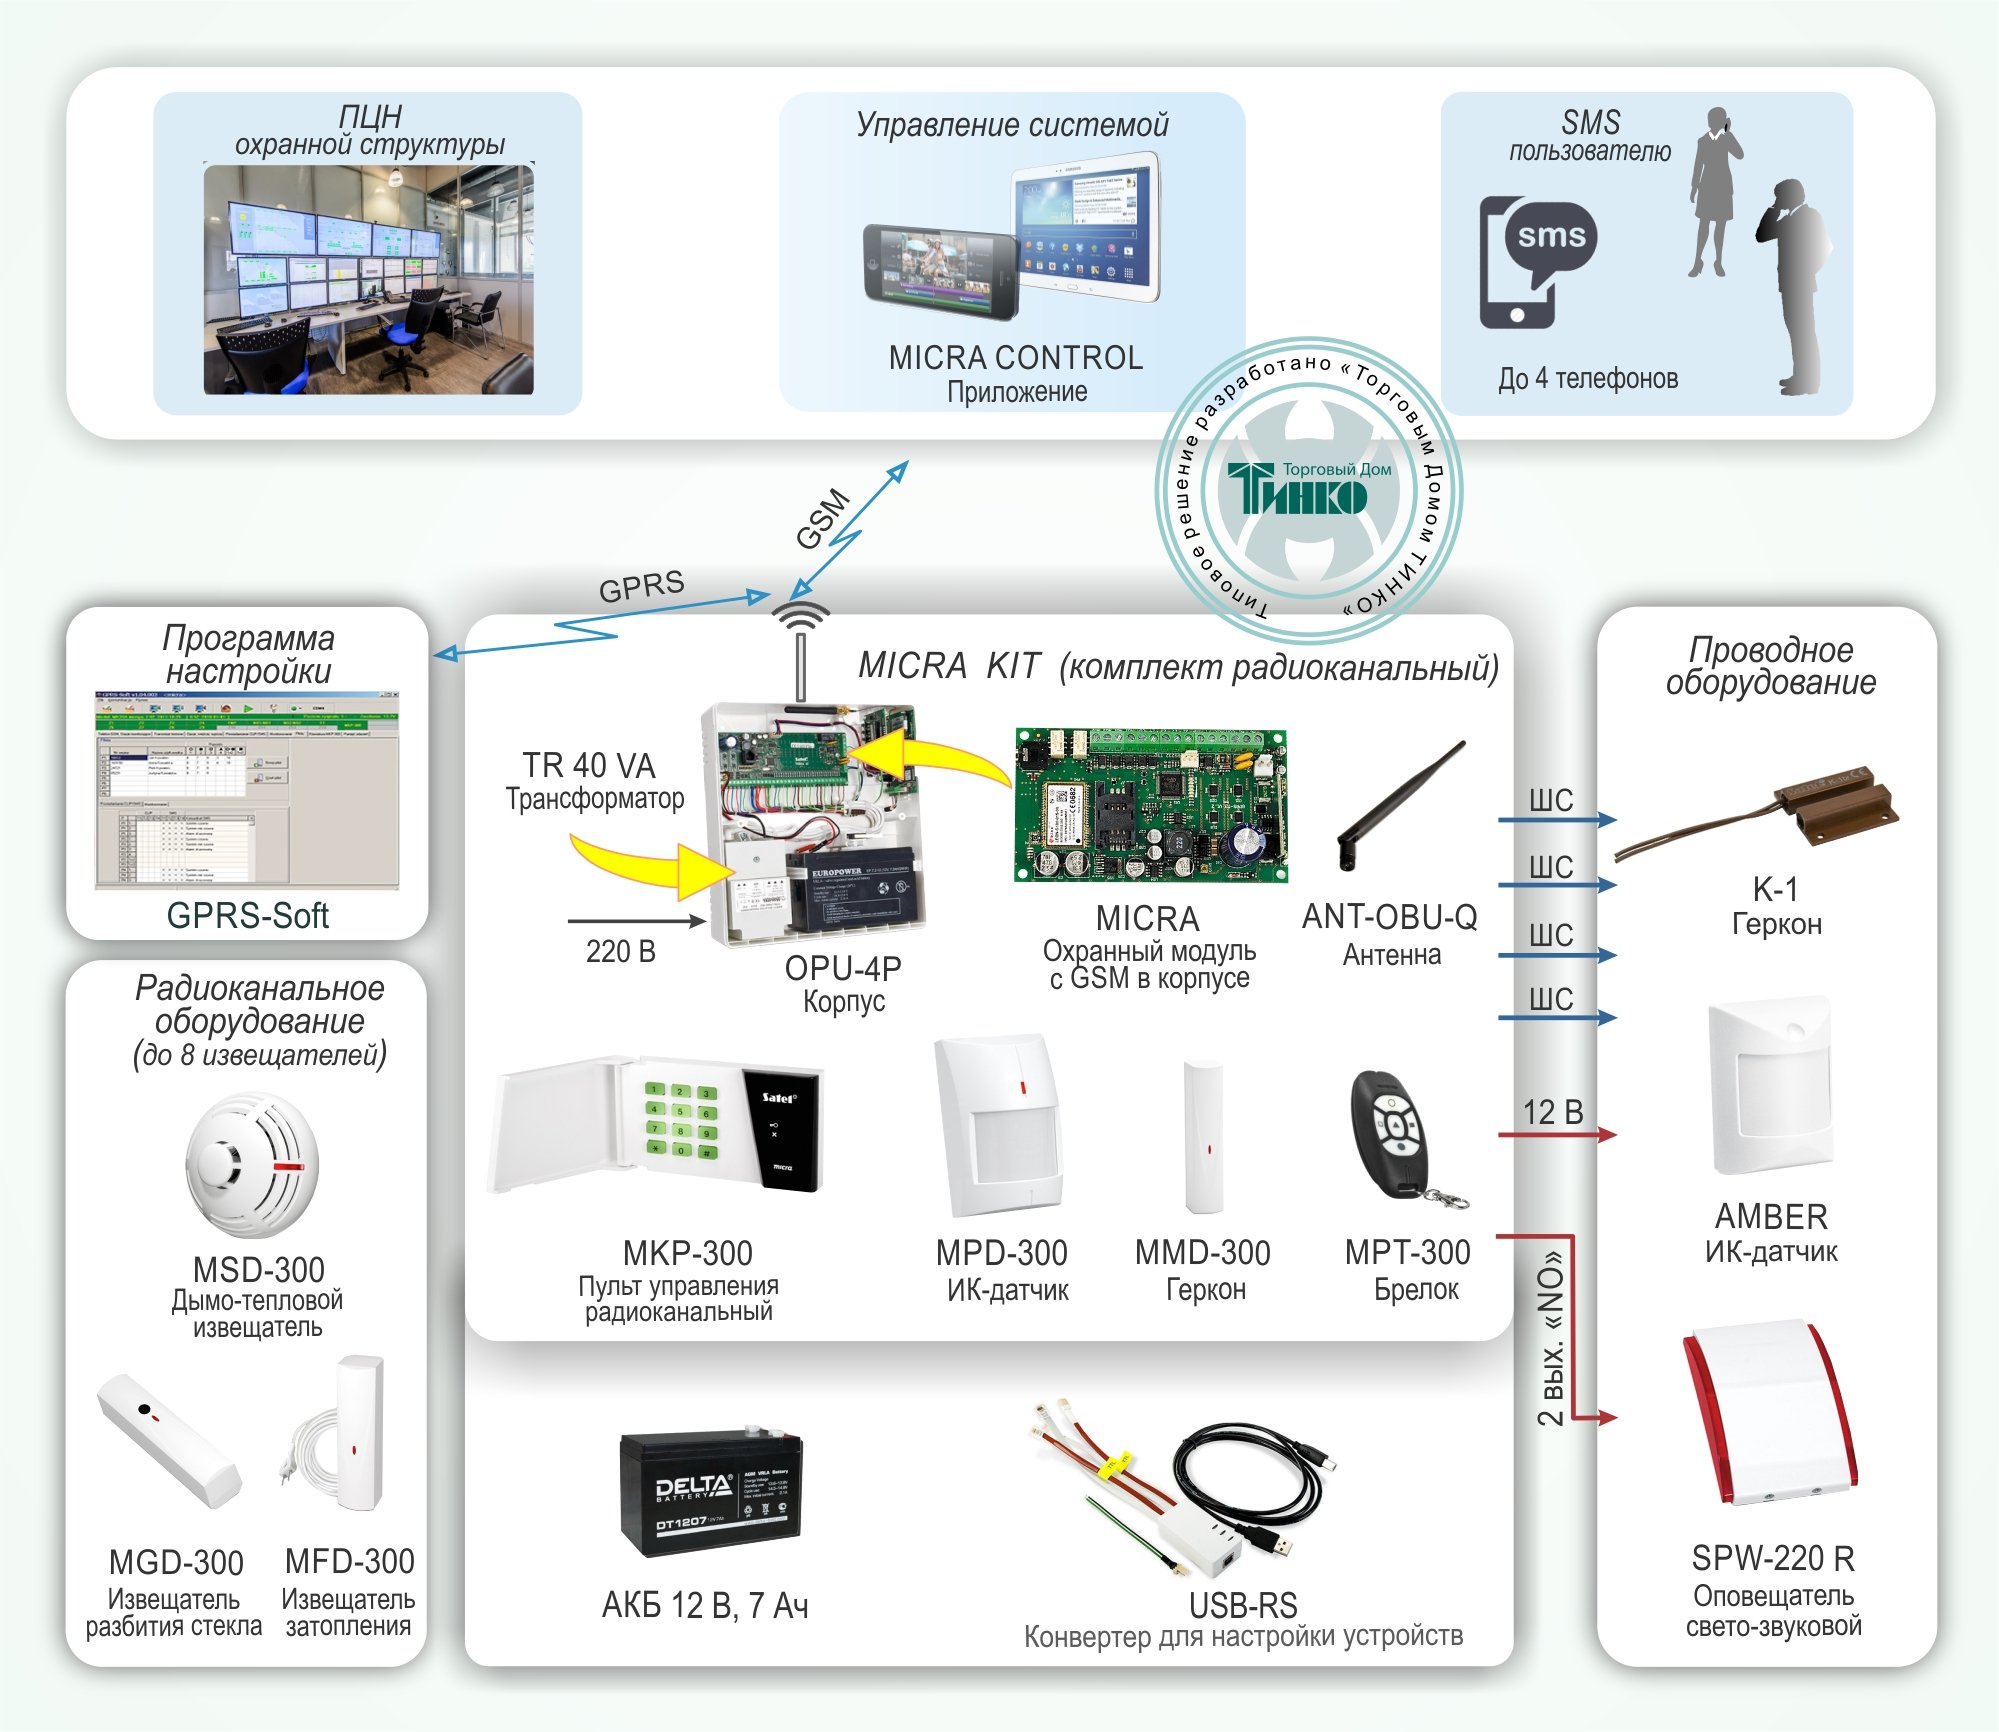 ОПС-031: Система охранной сигнализации с дистанционным контролем извещателей по GSM-каналу на базе системы «MICRA»